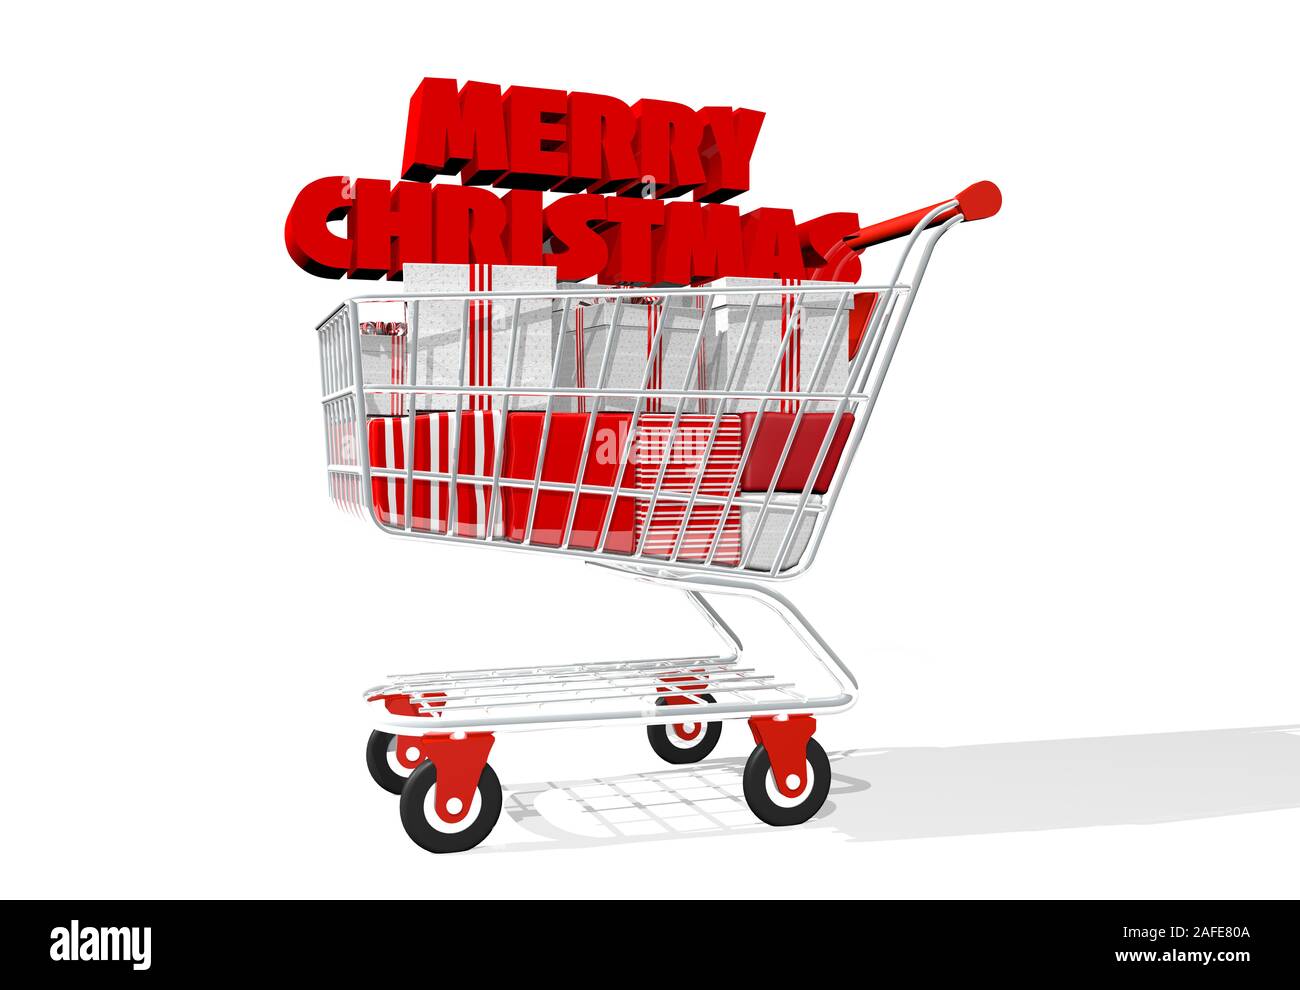 Profil Ansicht von Unten Der Warenkorb voll von weißen und roten Geschenkboxen mit dem Titel Frohe Weihnachten in dicken roten Lettern auf Geschenke auf whi isoliert Stockfoto